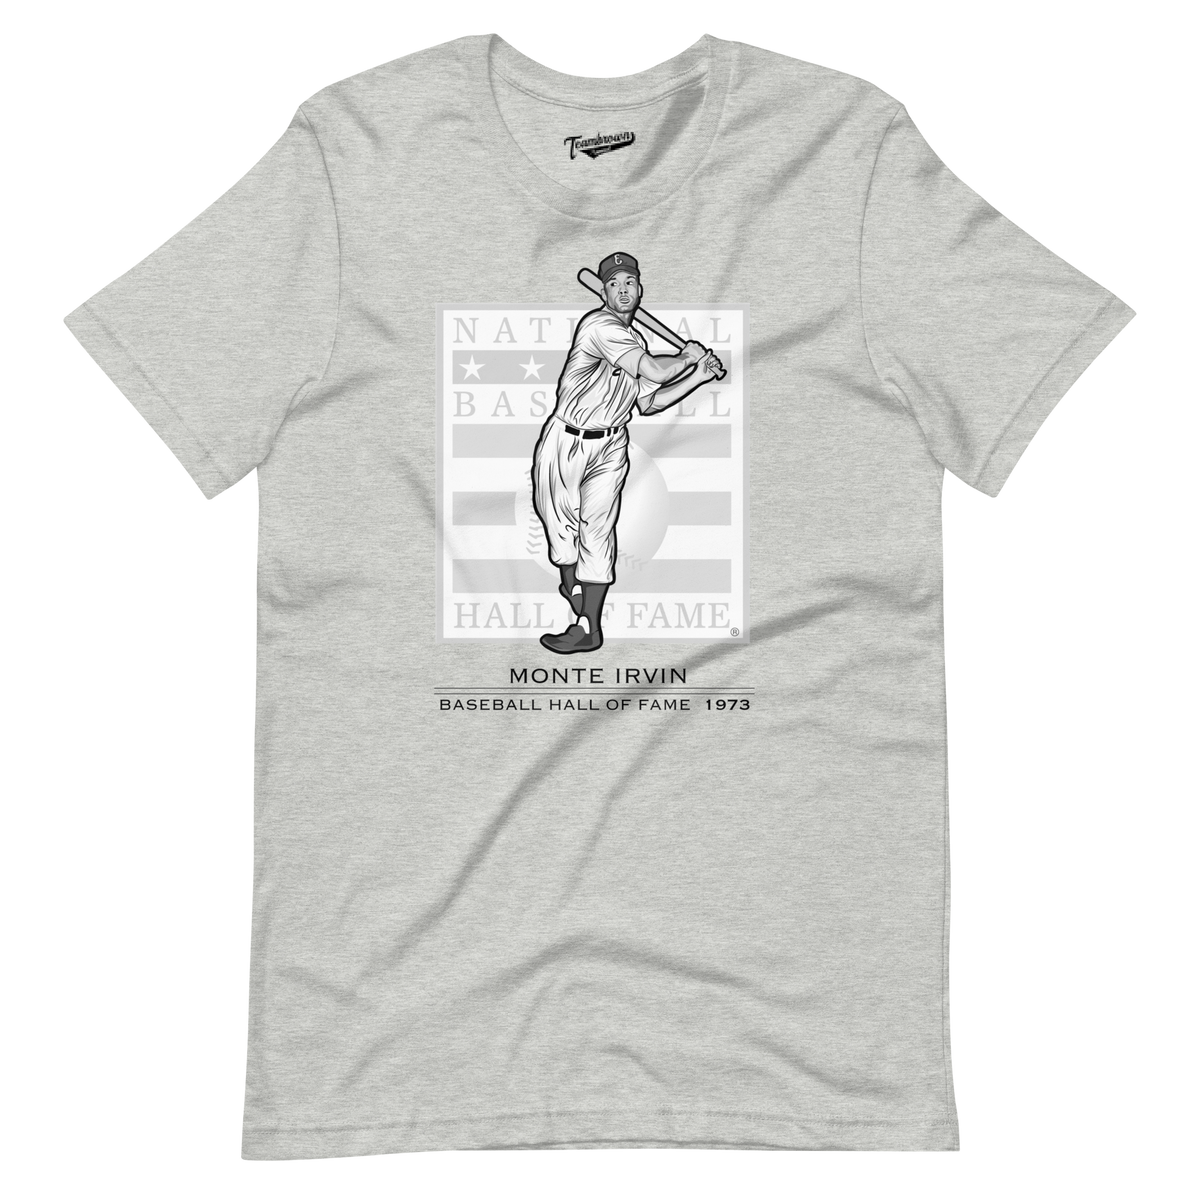 Baseball Hall of Fame Members - Monte Irvin - Unisex T-Shirt